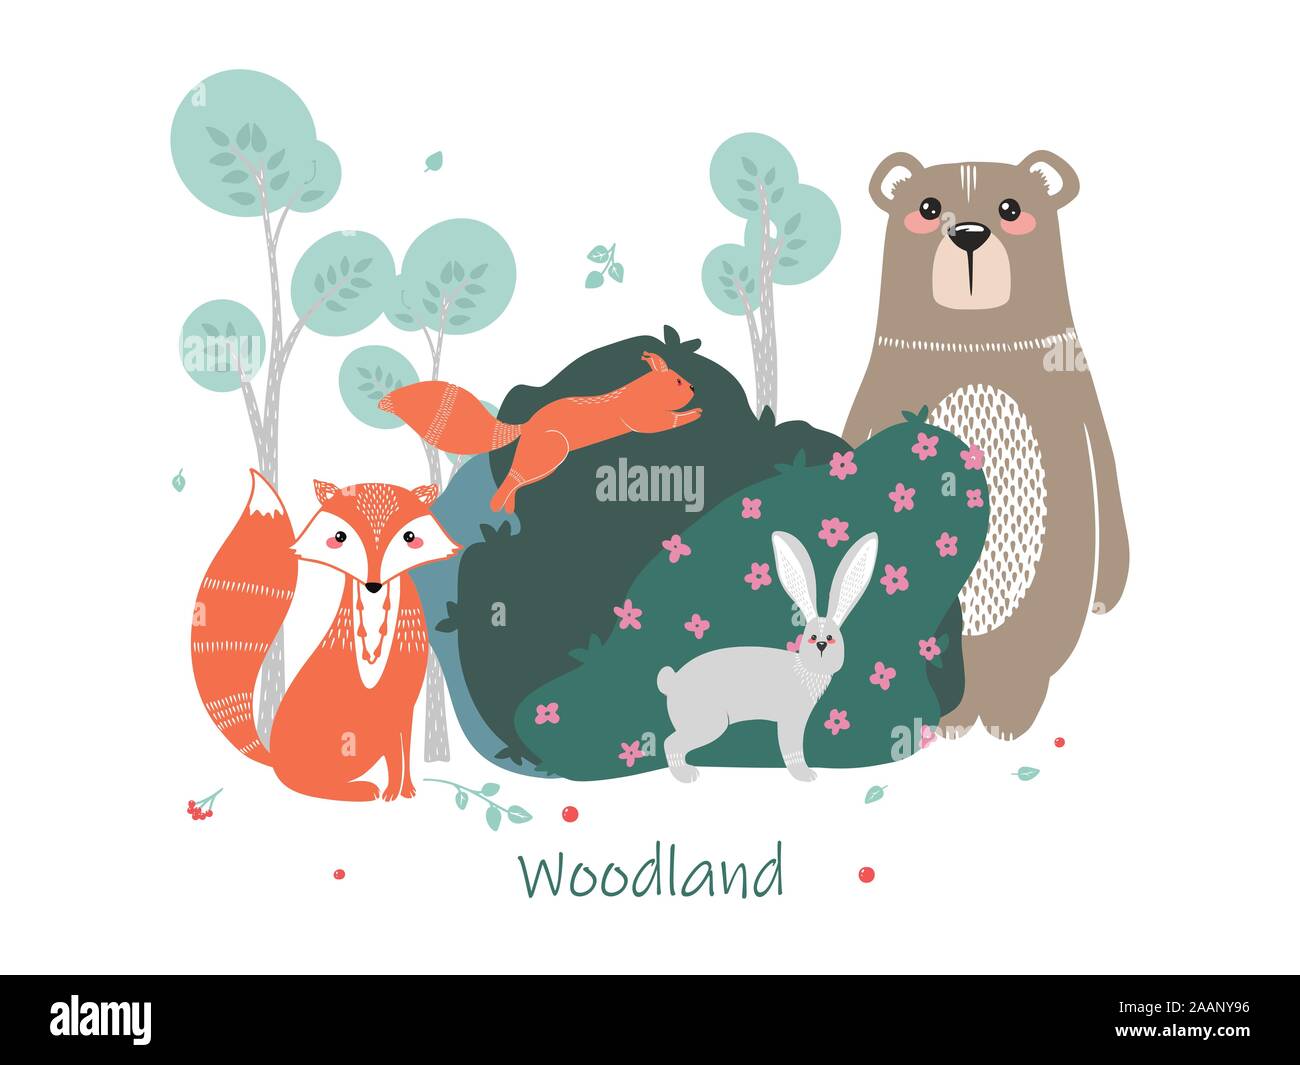 Simpatici animali sullo sfondo della foresta, gli alberi, piante. Orso, Fox, lo scoiattolo, la lepre. Gli animali del bosco. Illustrazioni vettoriali in stile scandinavo Illustrazione Vettoriale